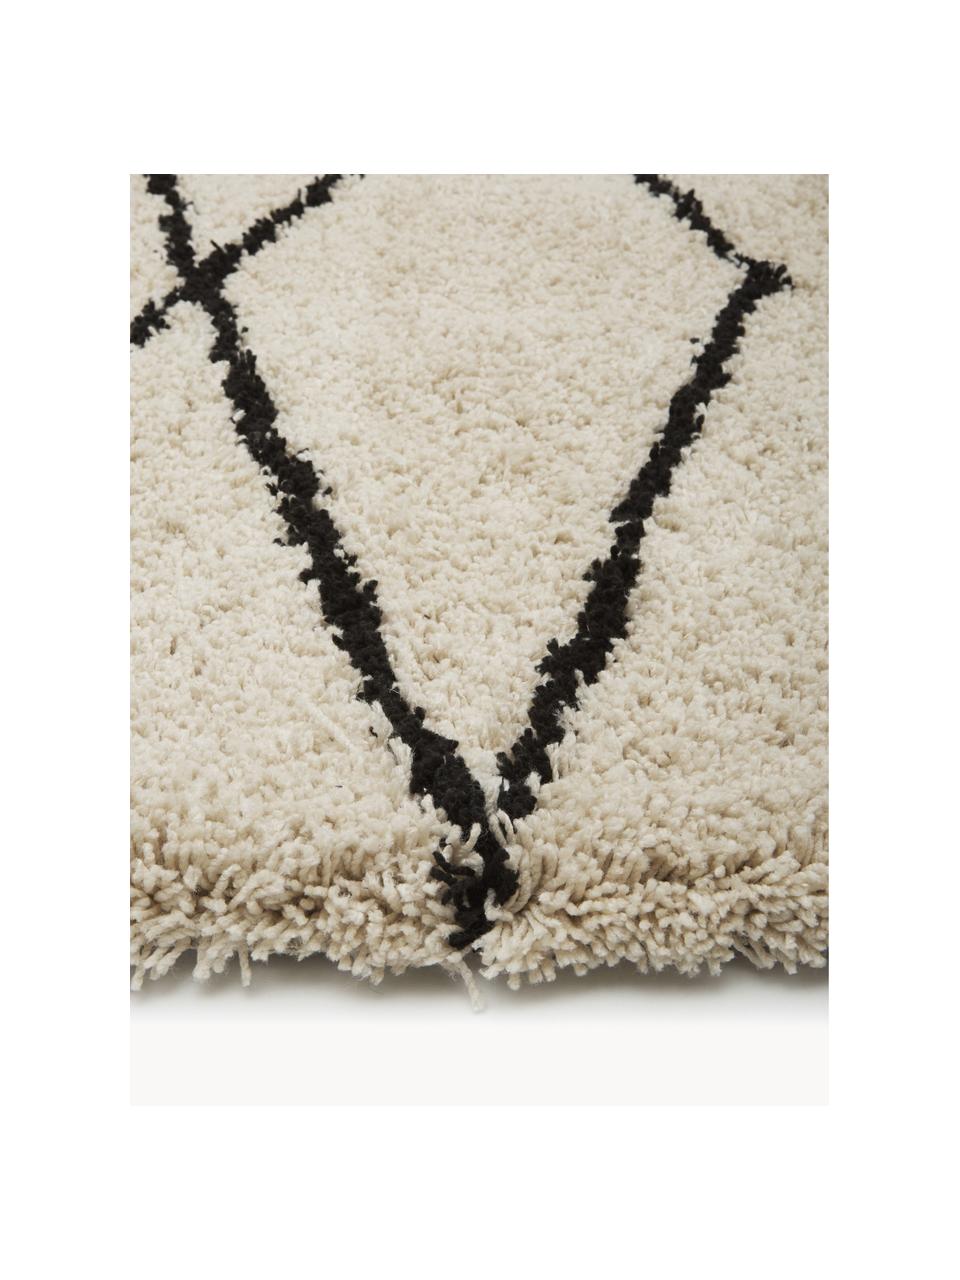 Flauschiger Hochflor-Teppich Nouria, handgetuftet, Flor: 100 % Polyester, Beige, Schwarz, B 200 x L 300 cm (Größe L)